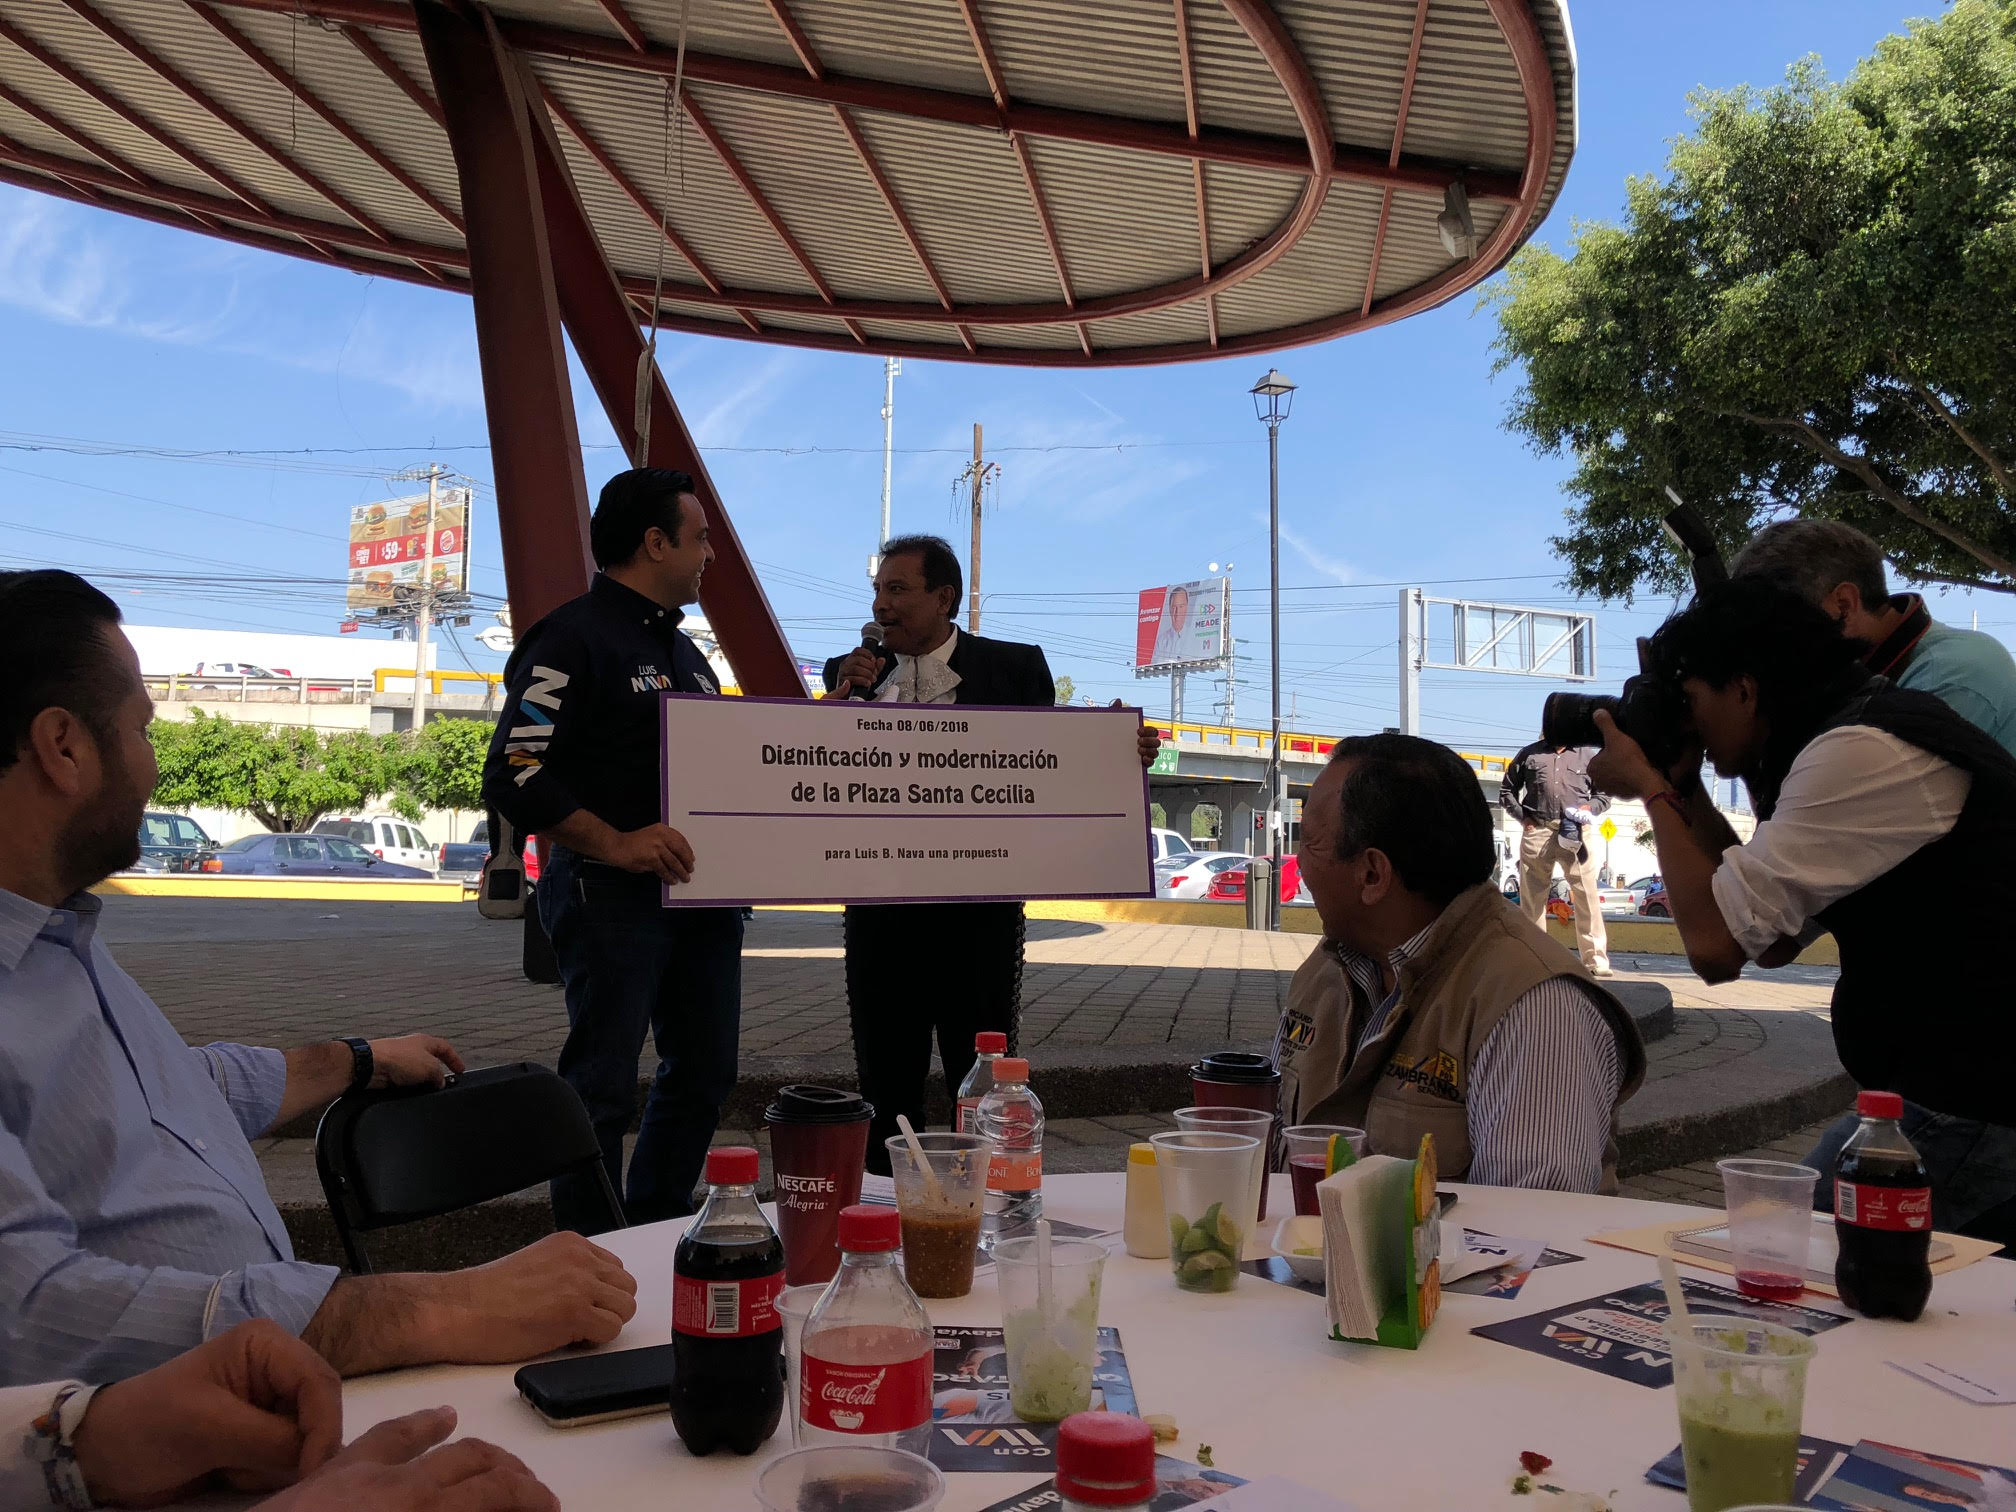  Luis Nava promete armonizar la Plaza del Mariachi en Querétaro